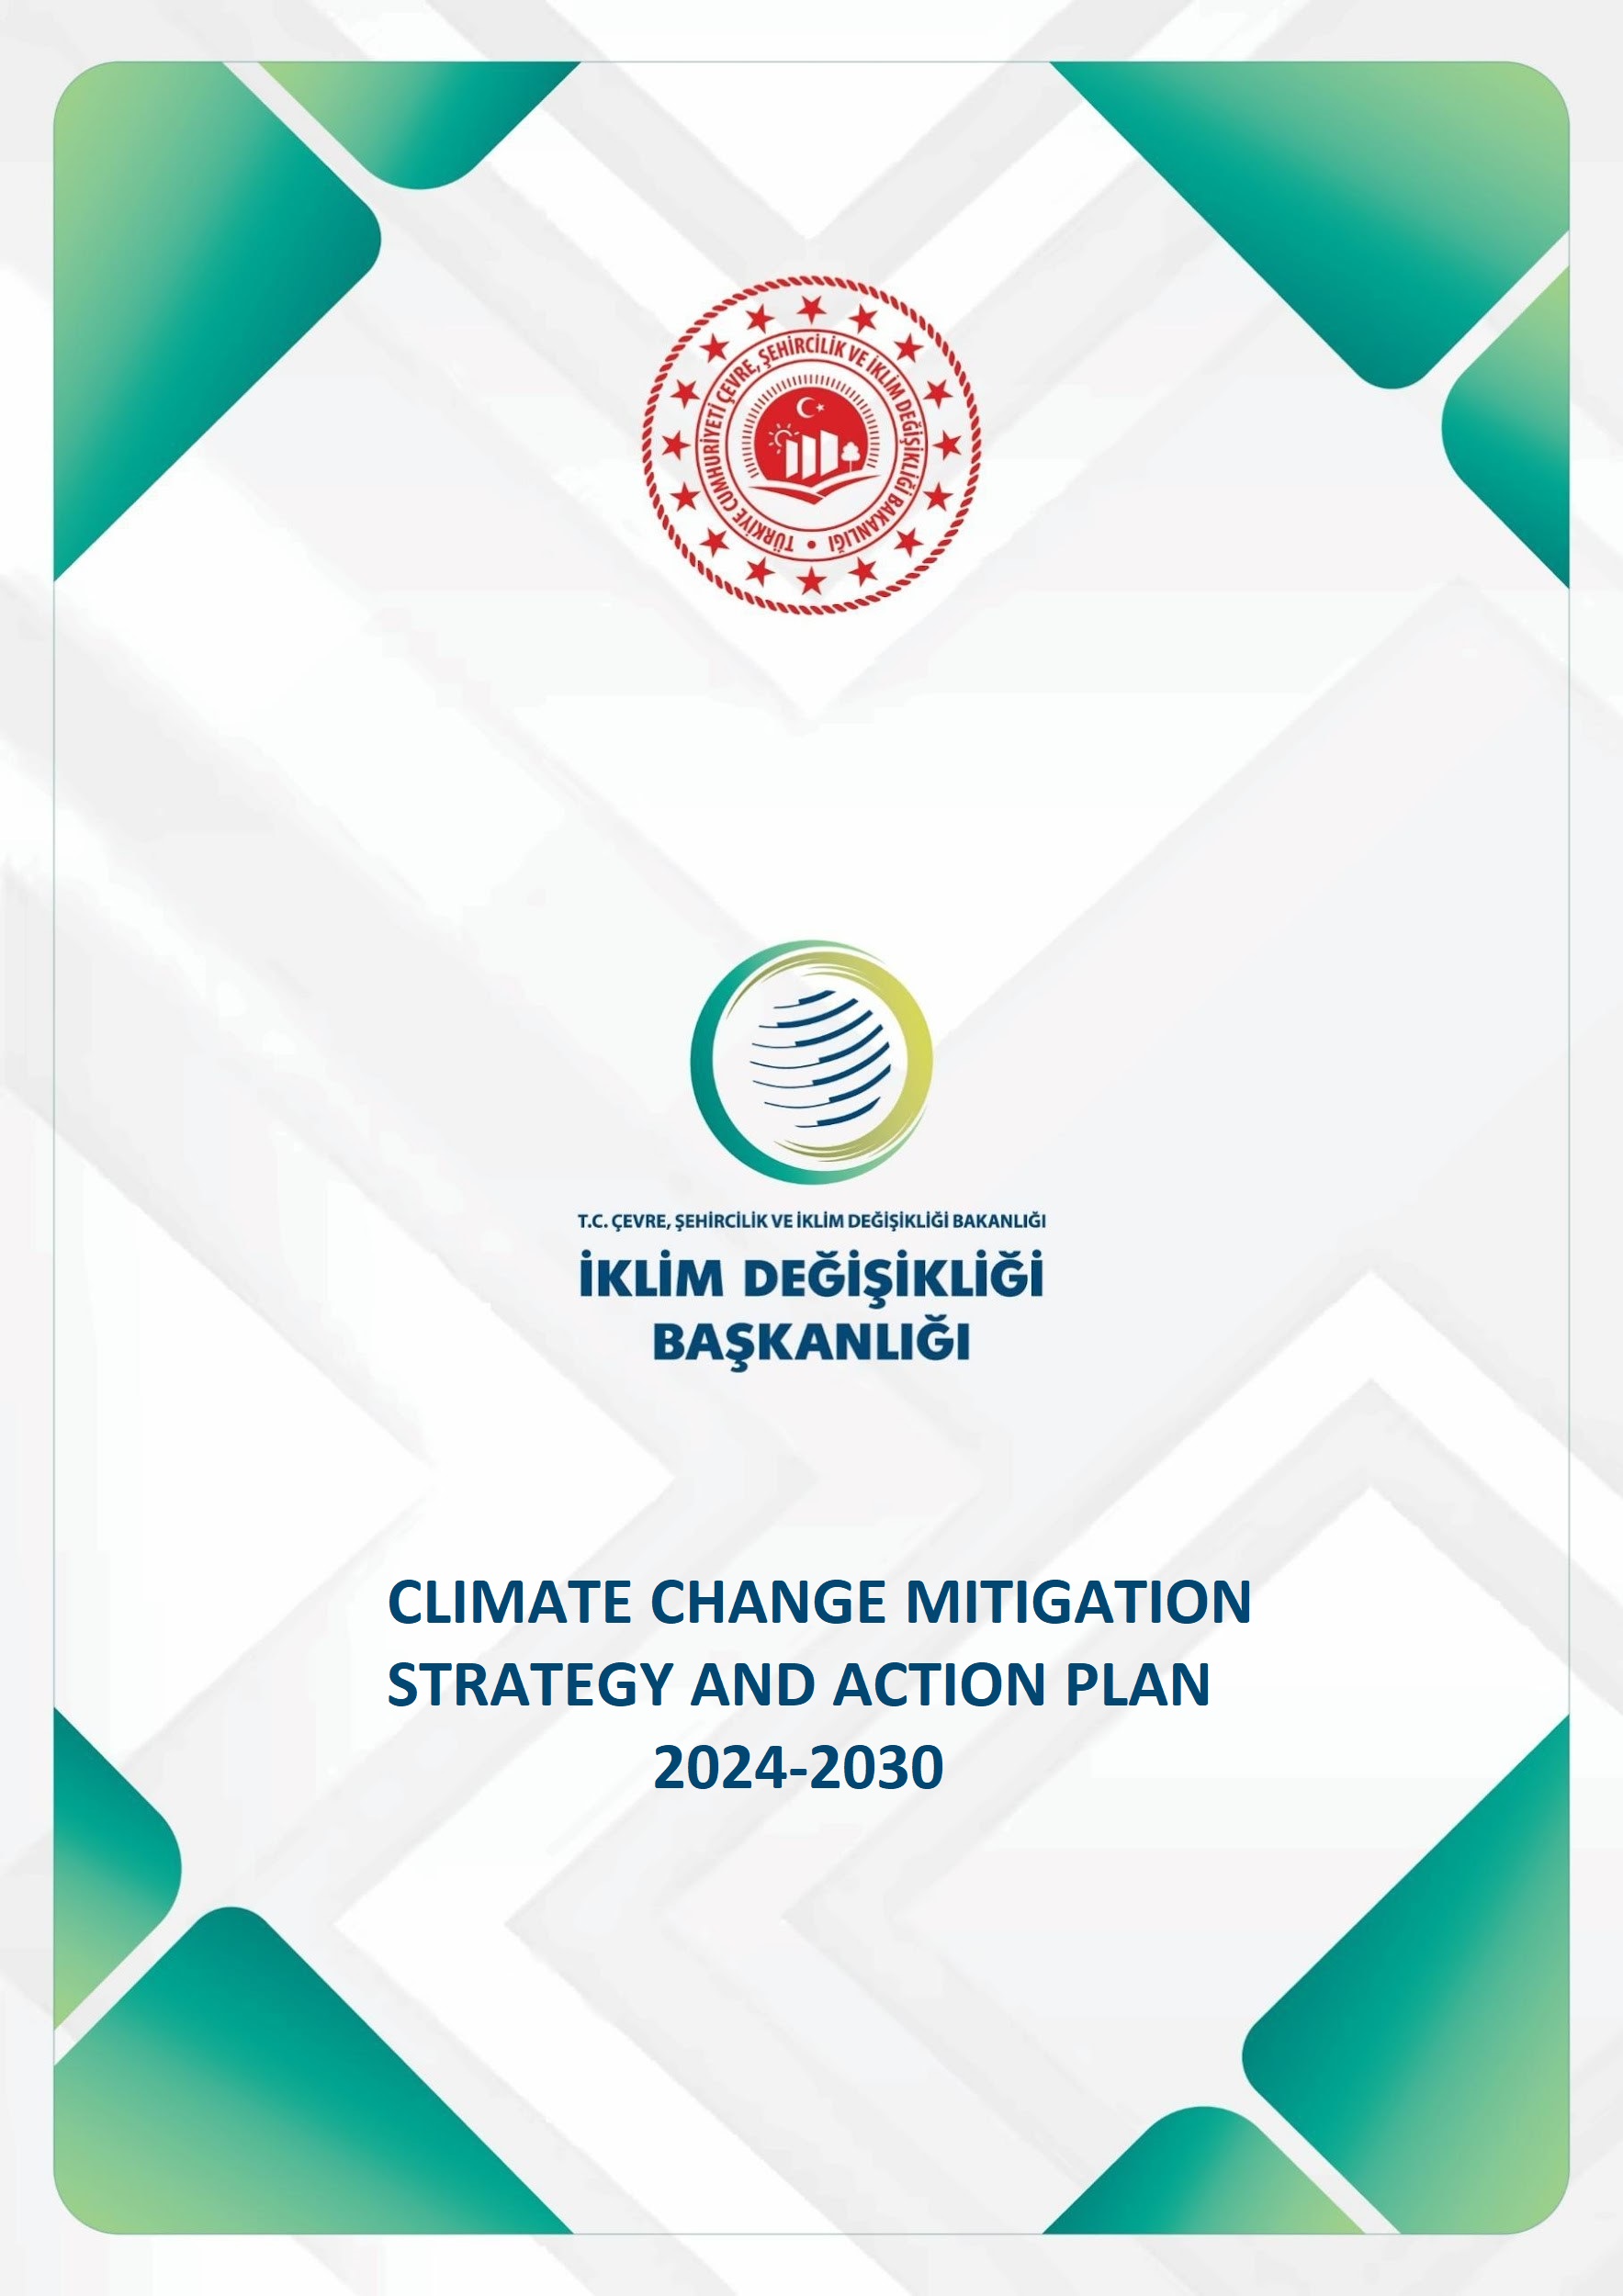 İklim Değişikliği Azaltım Stratejisi ve Eylem Planı İngilizce olarak yayınlandı